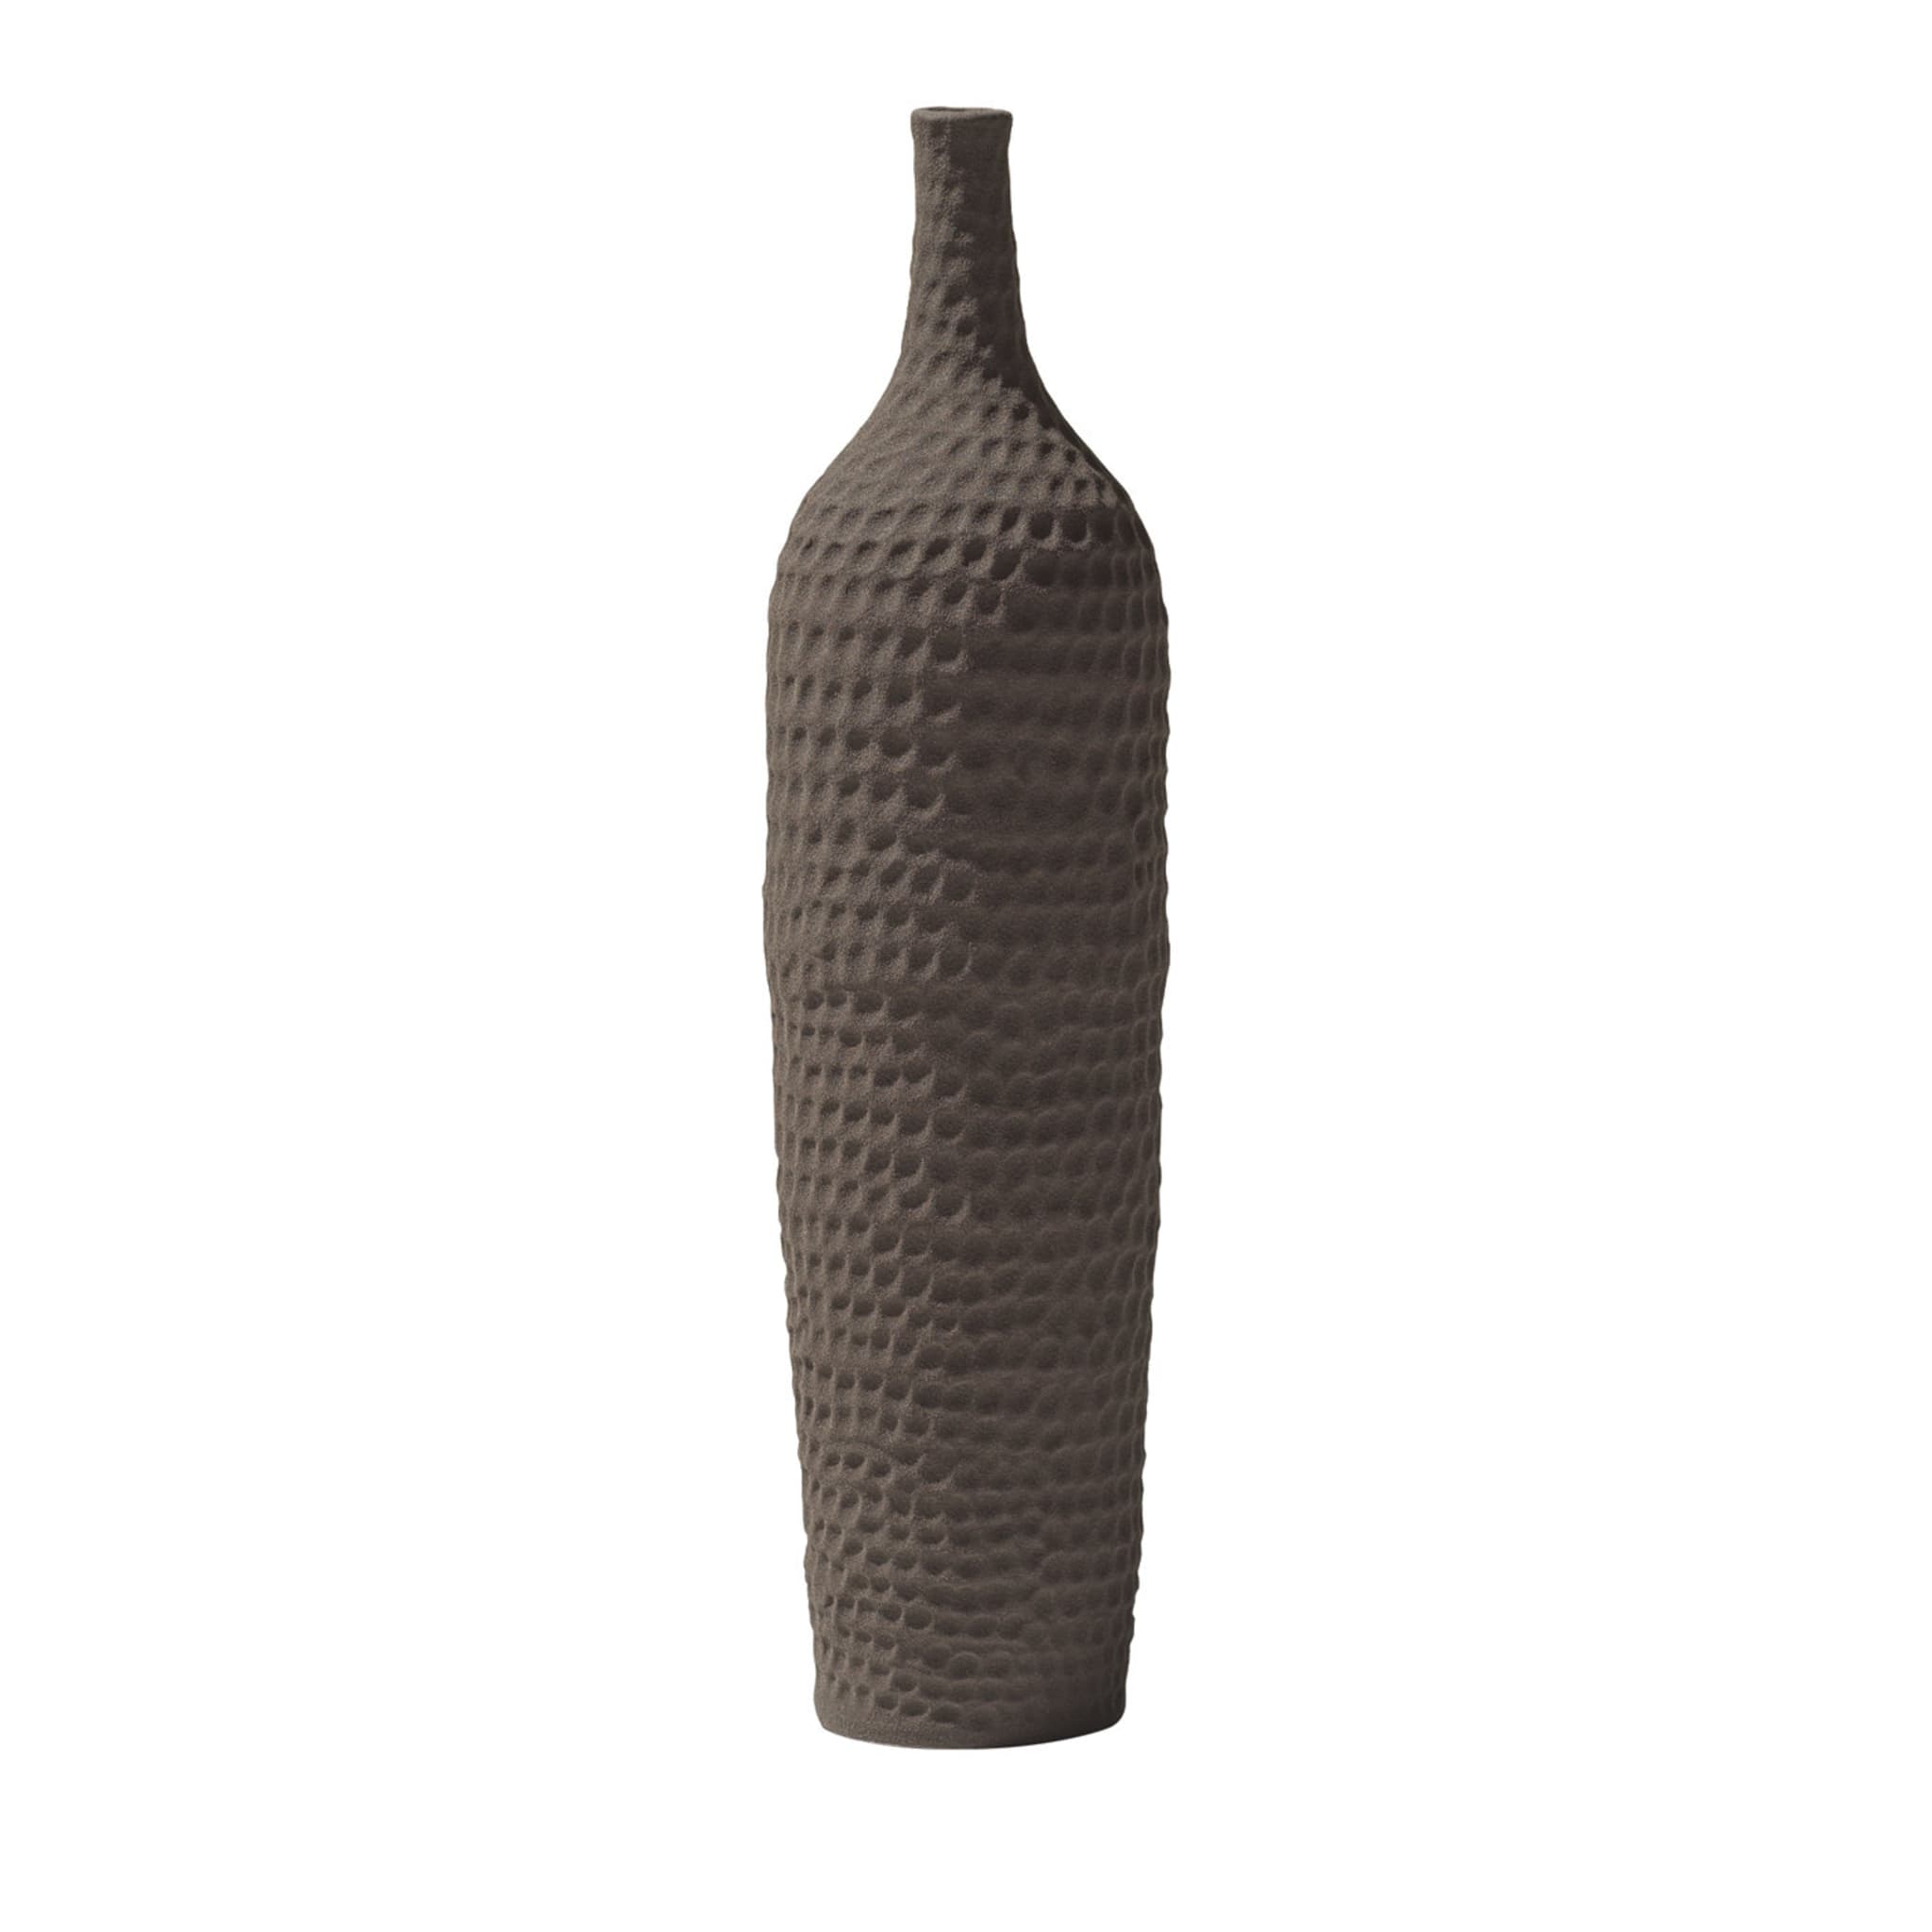 Braune Vase mit schmalem Hals von Andrea Anastasio (Battuti)  - Hauptansicht